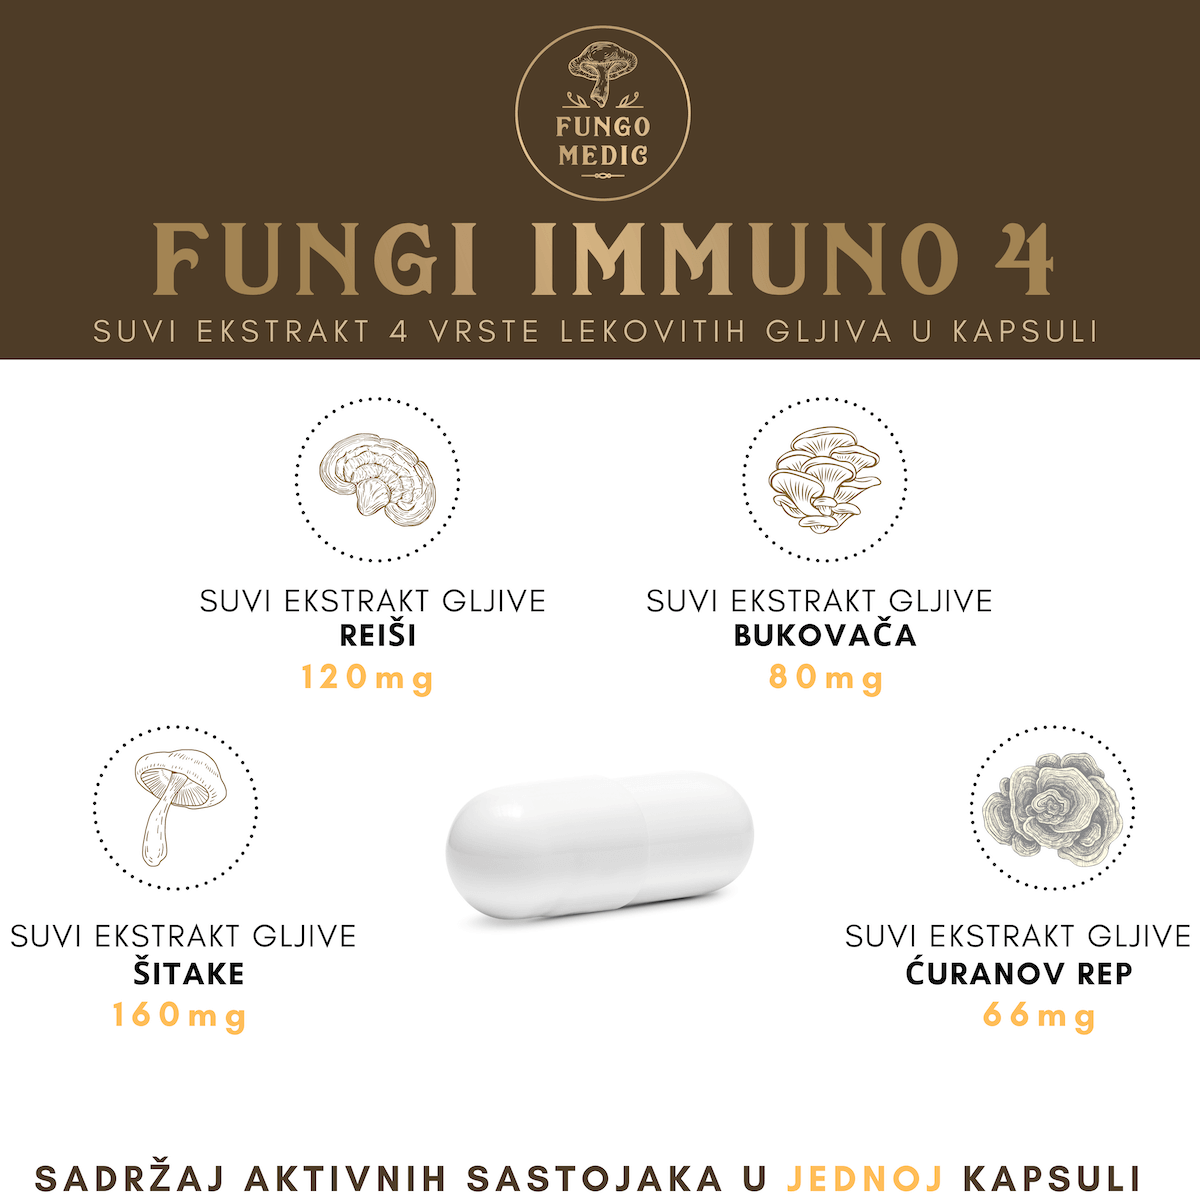 Sadržaj aktivnih sastojaka Fungi Immuno 4 po kapsuli: 160 mg šitake, 120 mg reiši, 80 mg bukovača, 66 mg ćuranov rep